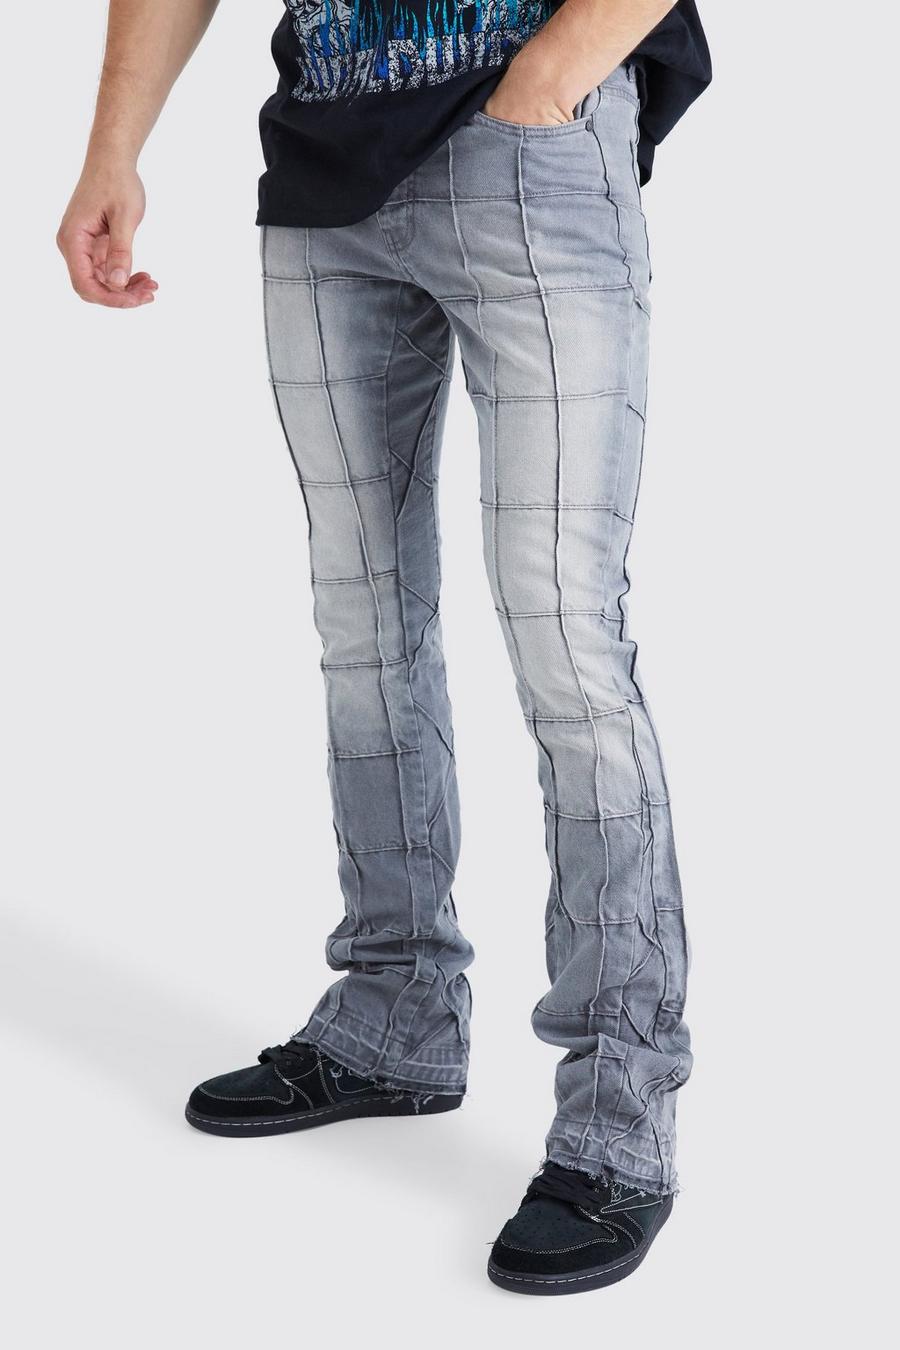 Jeans Tall Slim Fit in denim rigido con pannelli a zampa e inserti, Mid grey gris